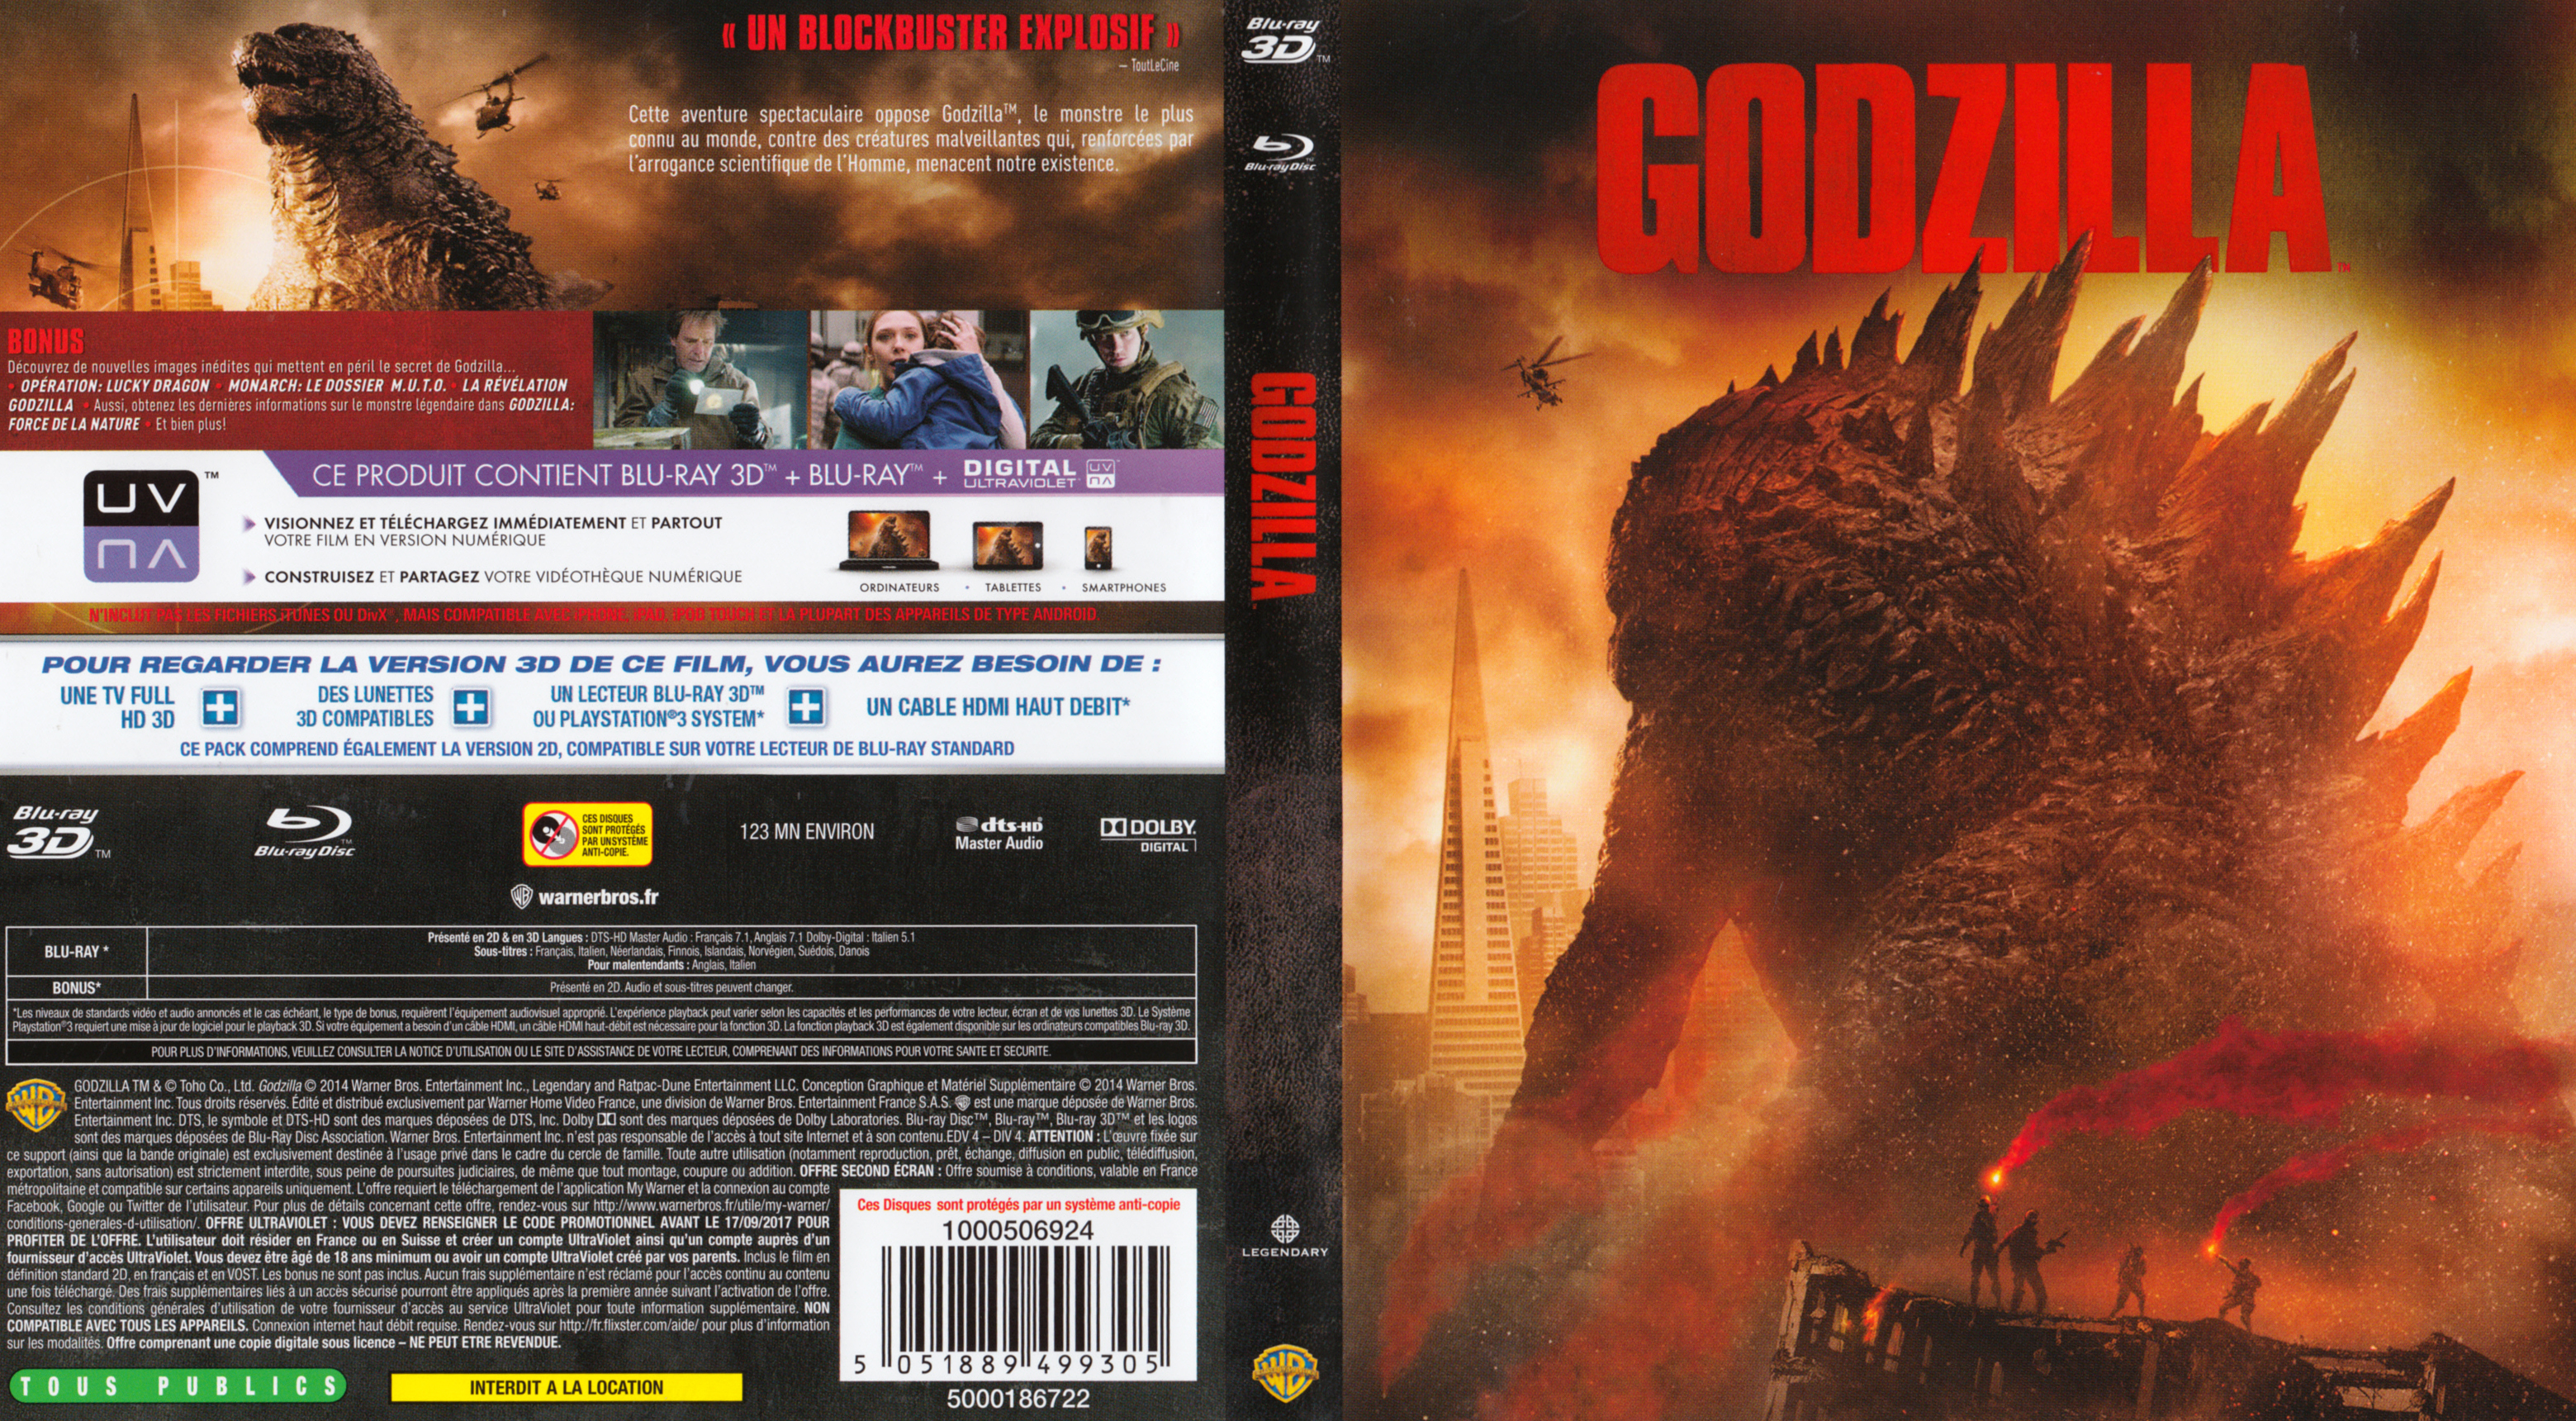 Jaquette DVD Godzilla (2014) 3D (BLU-RAY)